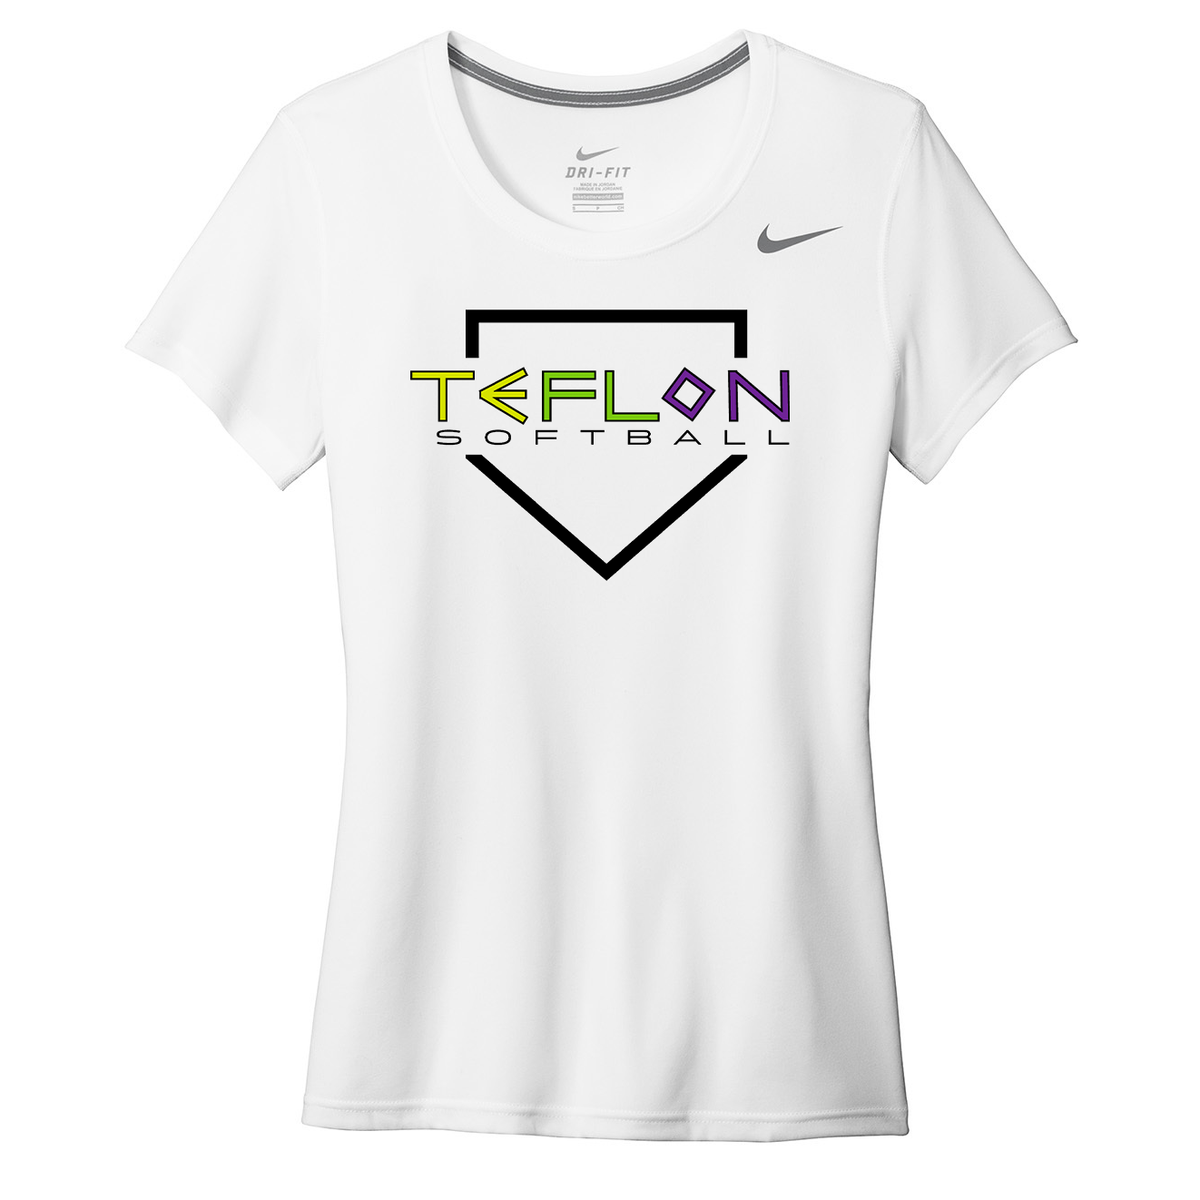 Team Teflon Softball Nike Ladies Legend Tee